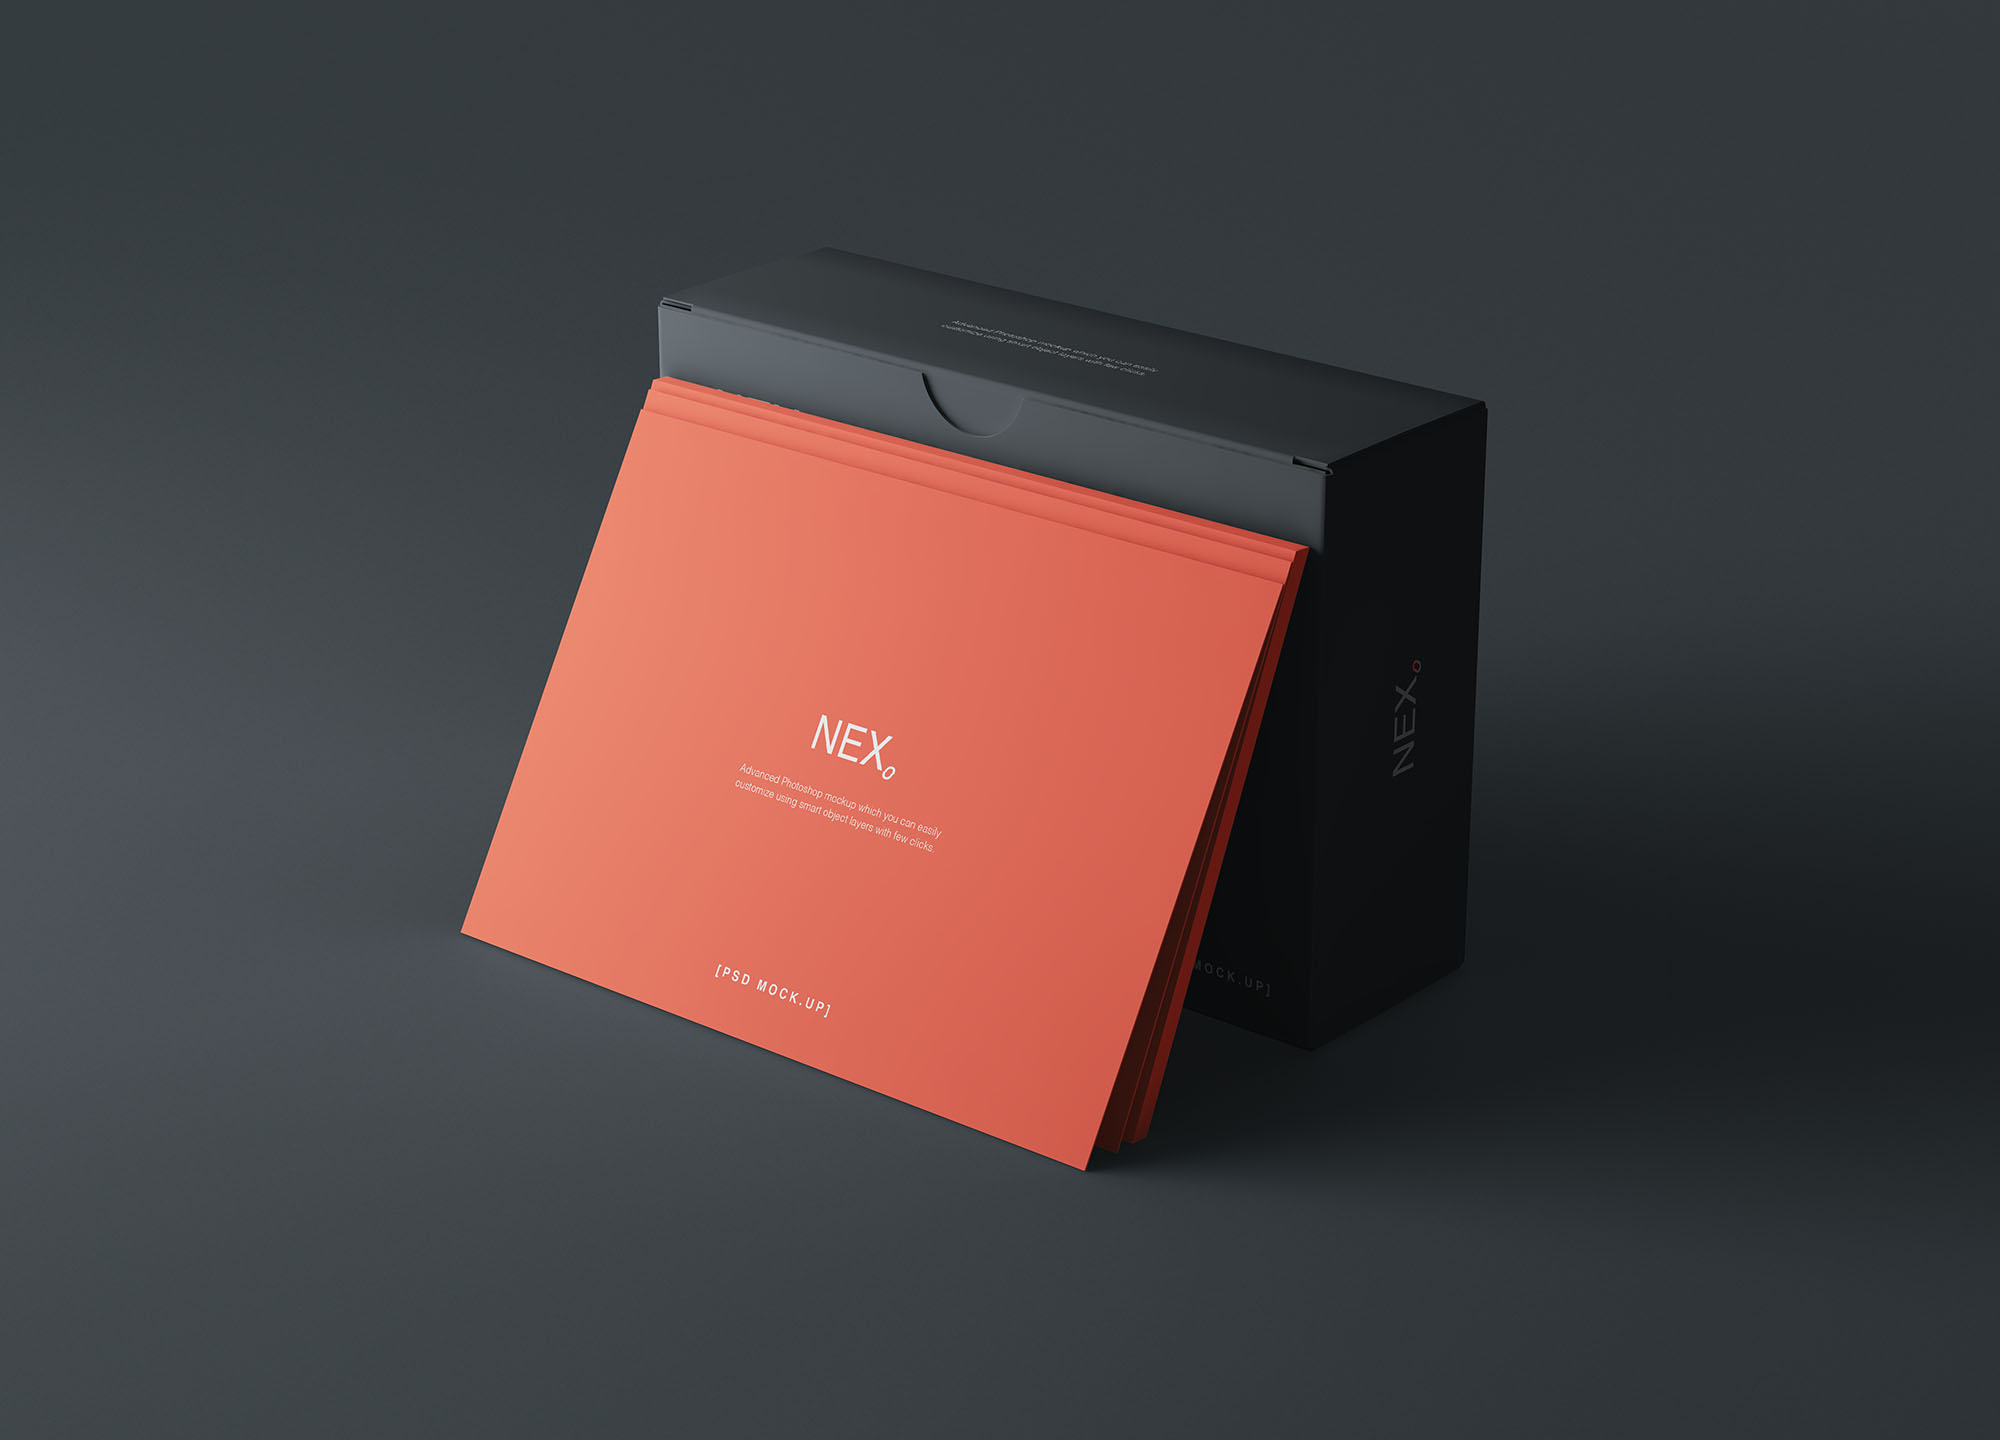 卡片包装盒外观设计效果图素材中国精选 Card Box Mockup插图(3)